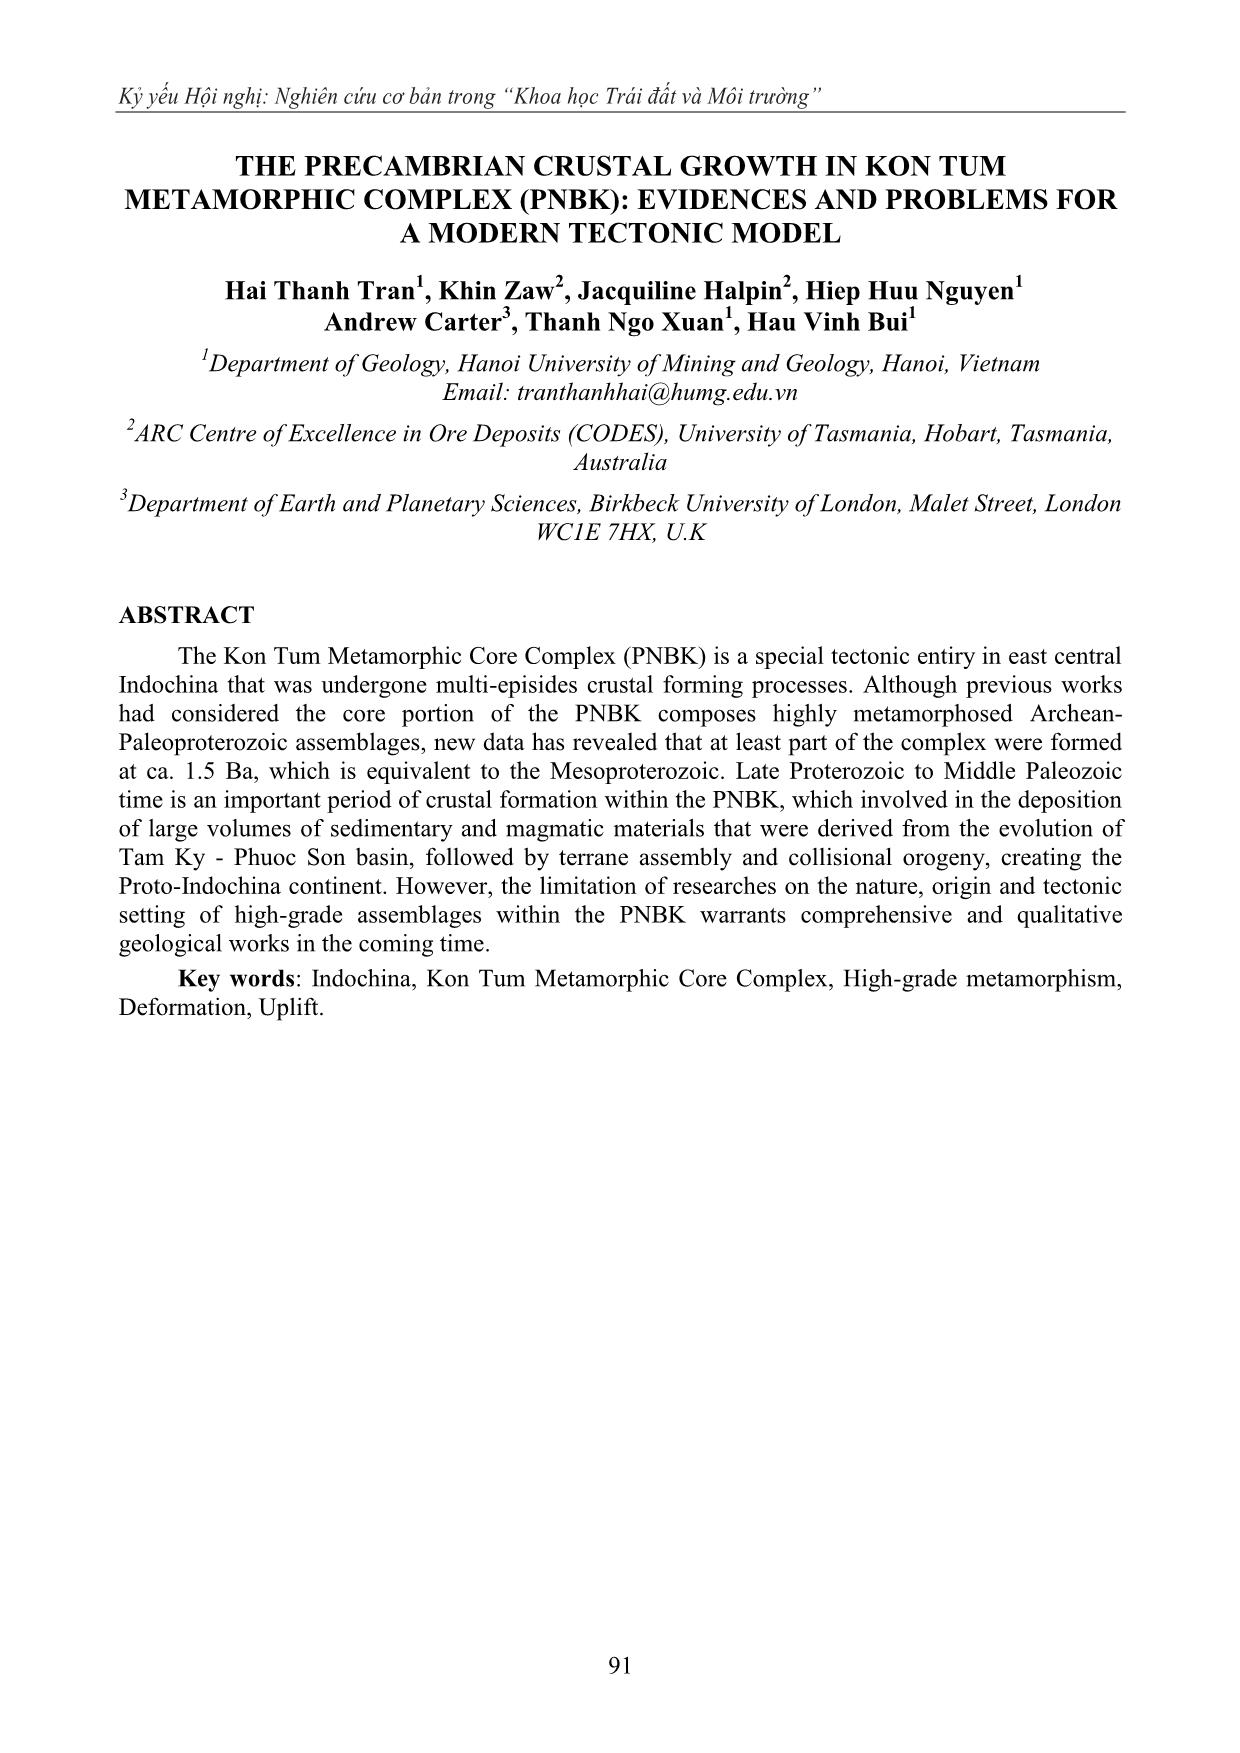 Sự tạo vỏ tiền Cambri trong phức hệ nhân biến chất Kon Tum (PNBK): bằng chứng và tồn tại cho một mô hình kiến tạo hiện đại trang 7